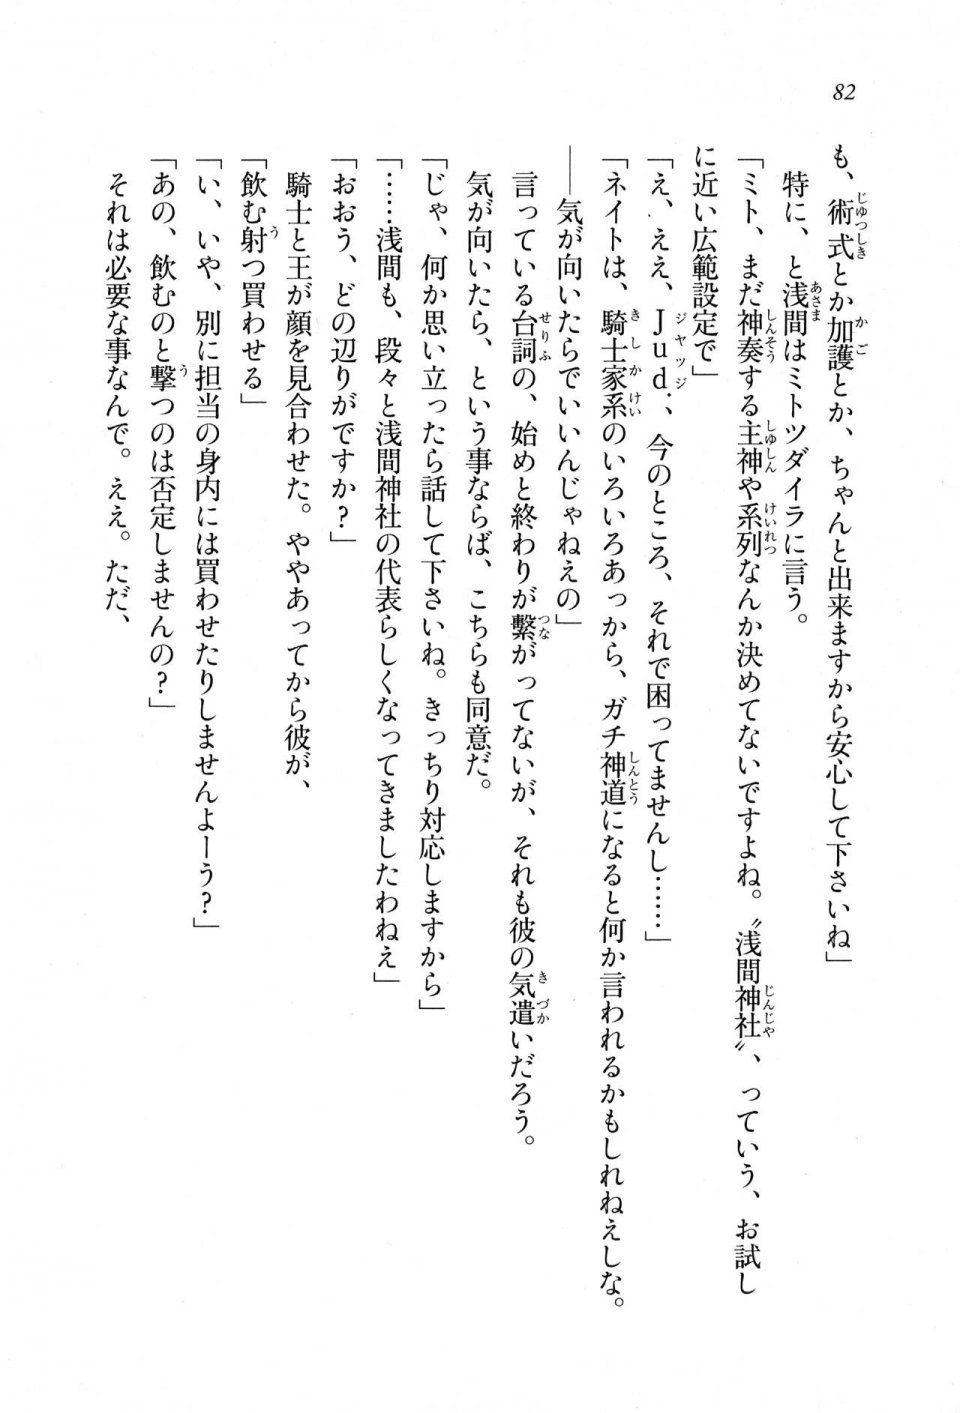 Kyoukai Senjou no Horizon LN Sidestory Vol 1 - Photo #80